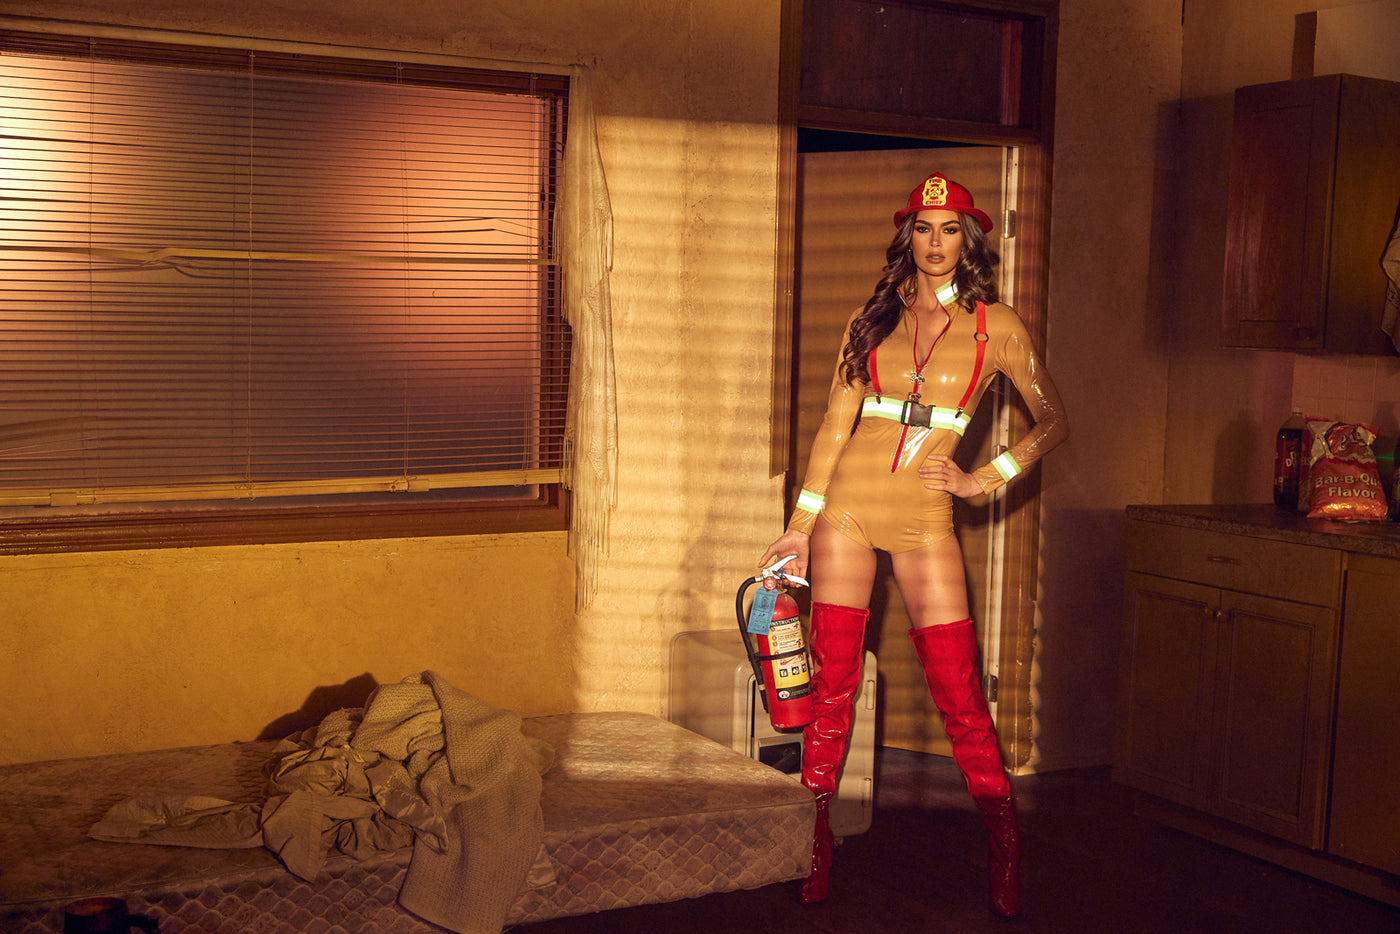 3pc. Firehouse Babe Firefighter Women's Halloween Costume - For Love of Lingerie